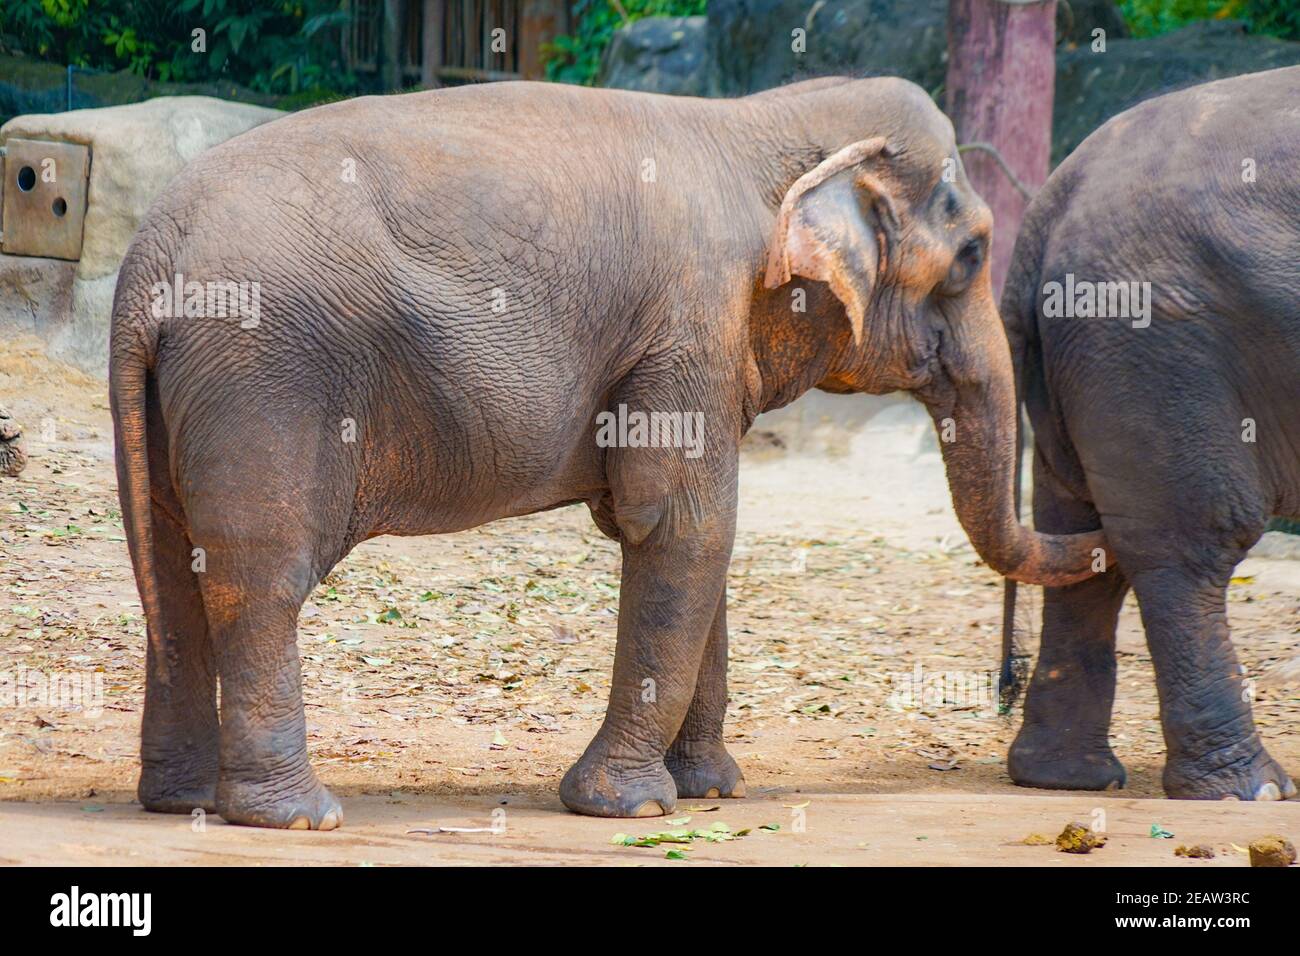 Elephant Singapore Zoo Stock Photo